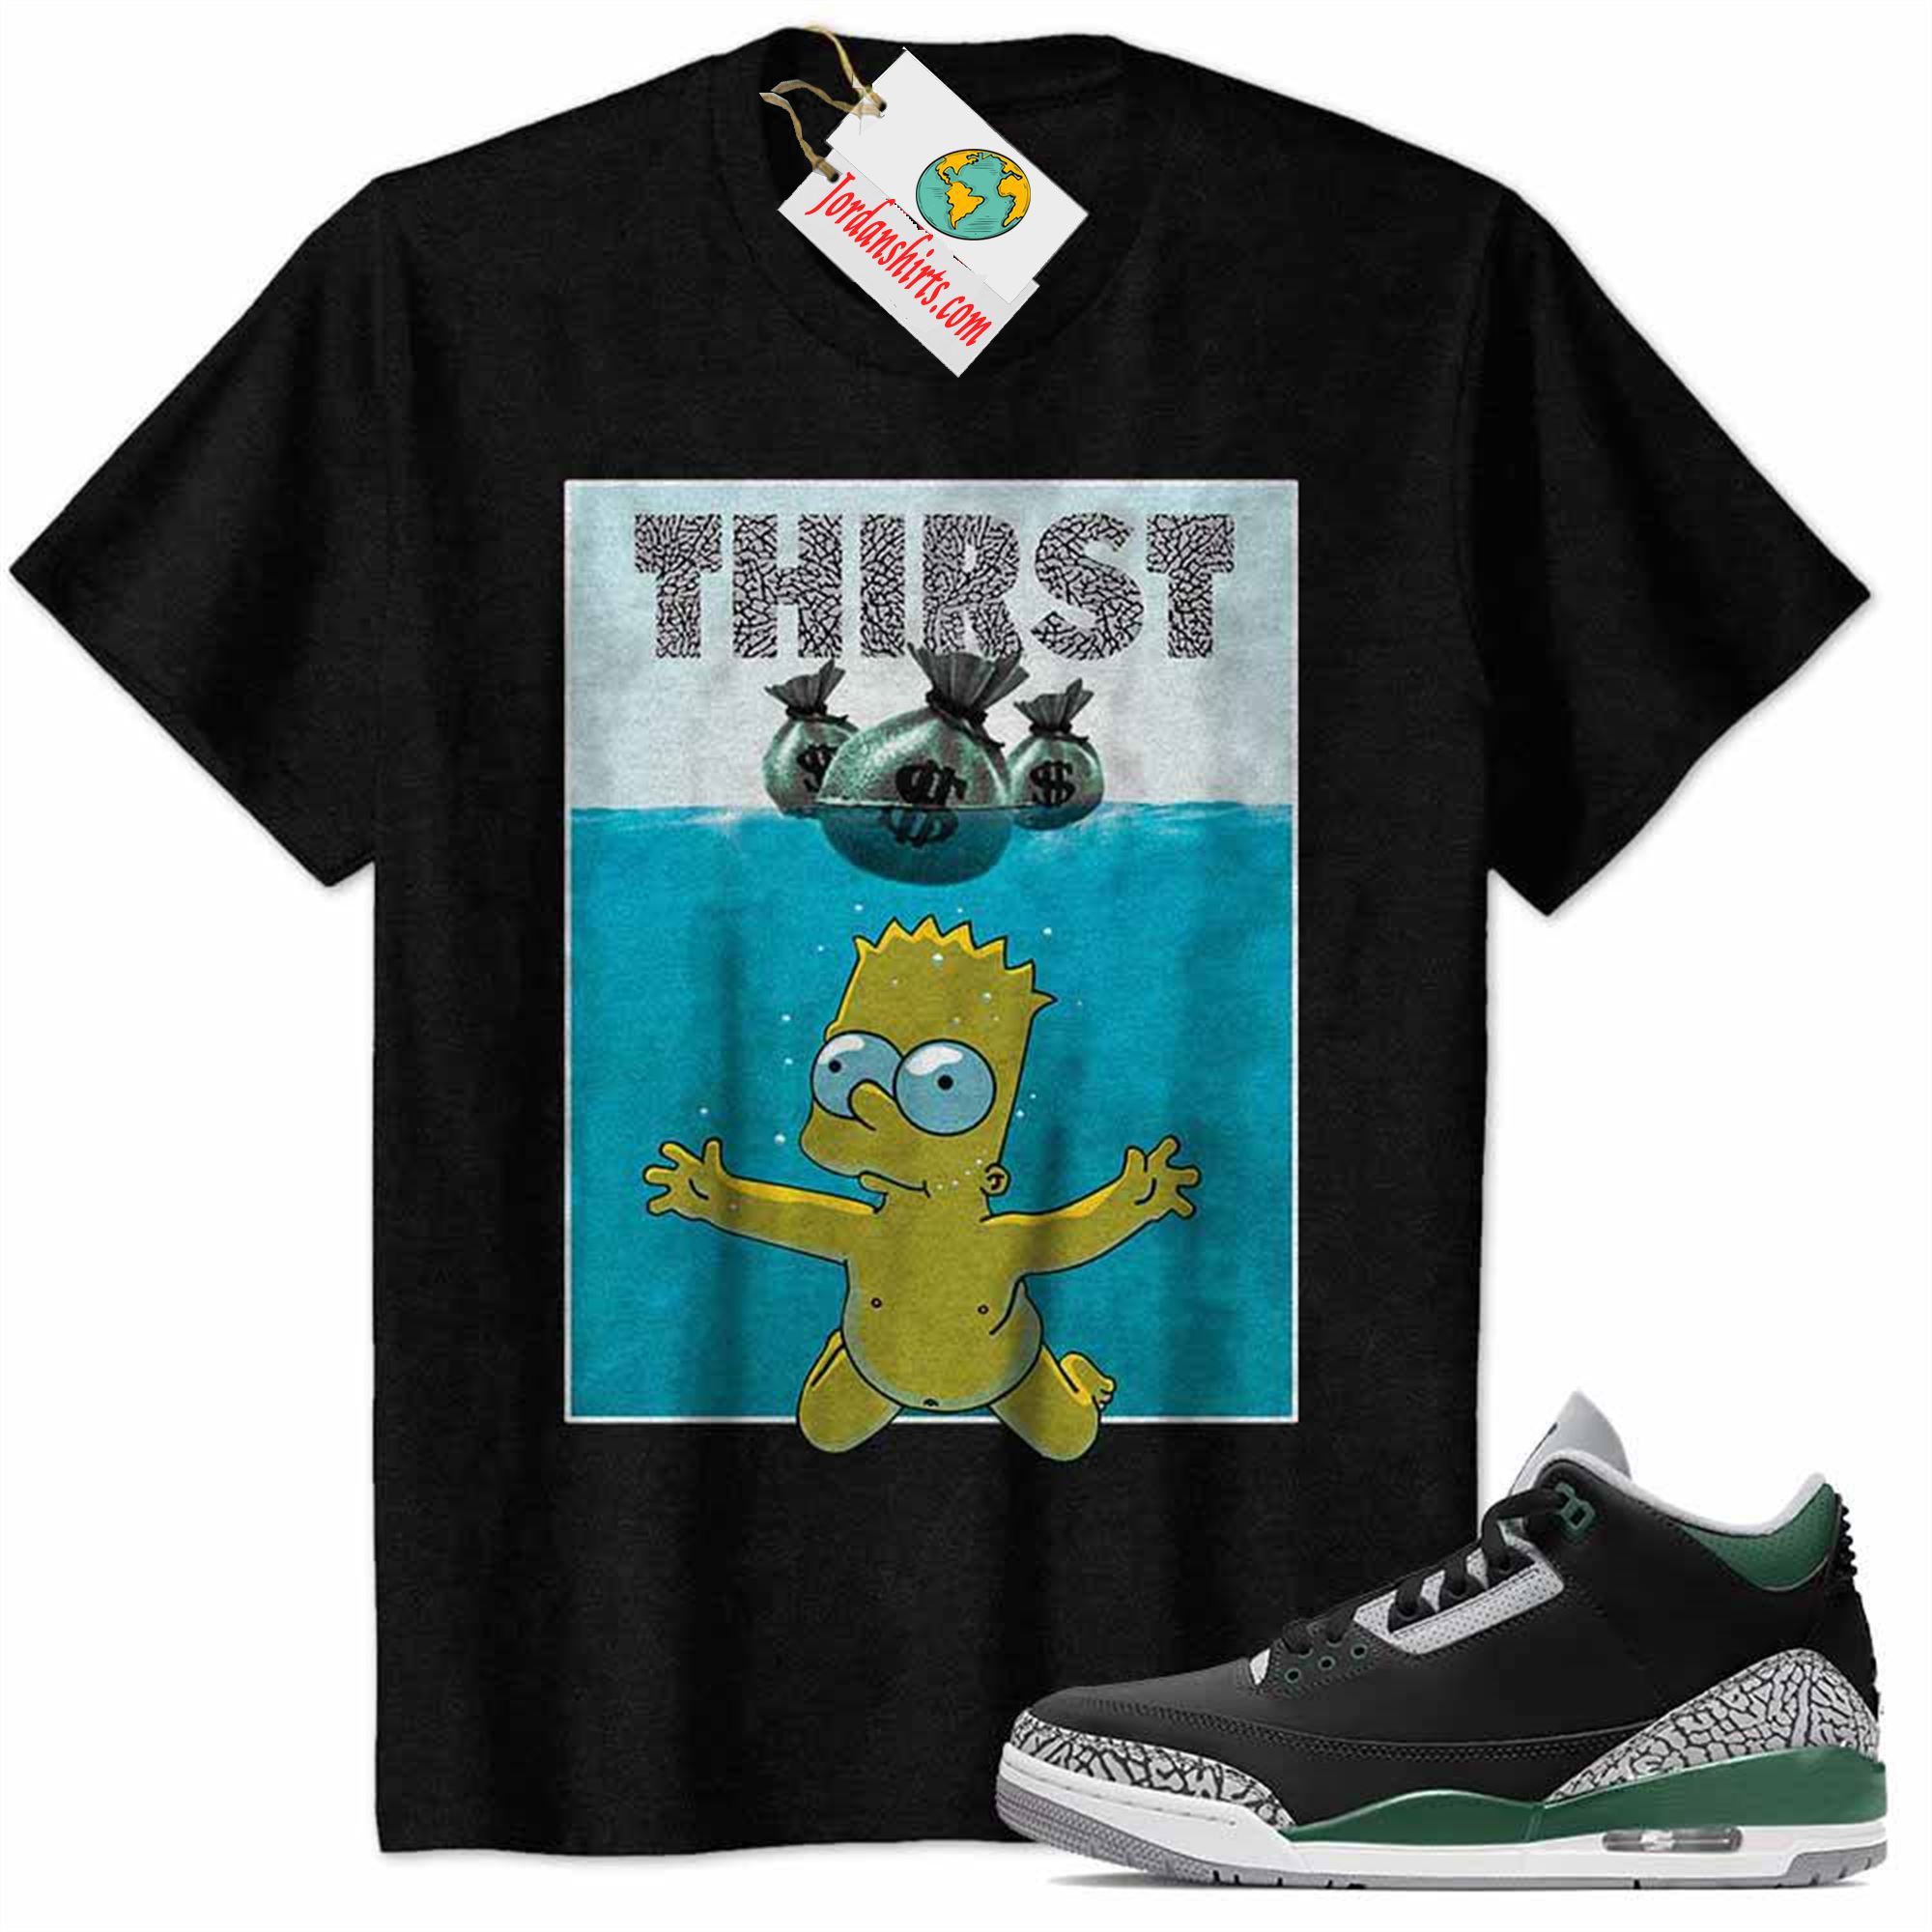 Jordan 3 Shirt, Bart Simpson Jaw Thirst Money Bag Black Air Jordan 3 Pine Green 3s Plus Size Up To 5xl